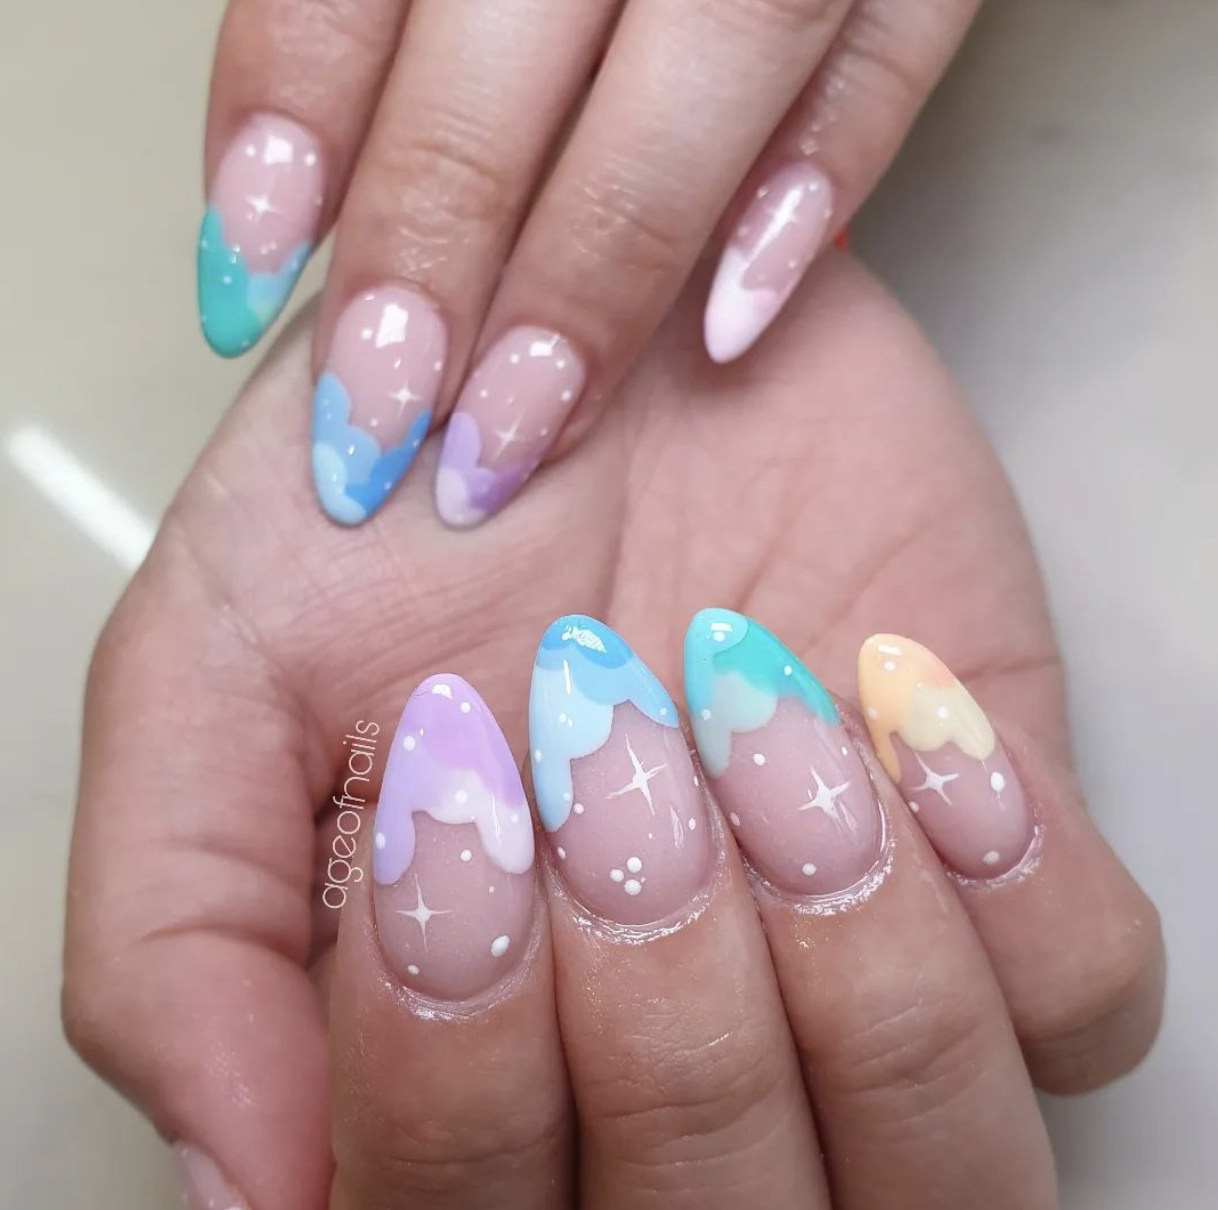 Sagittarians paint the sky on their nails.